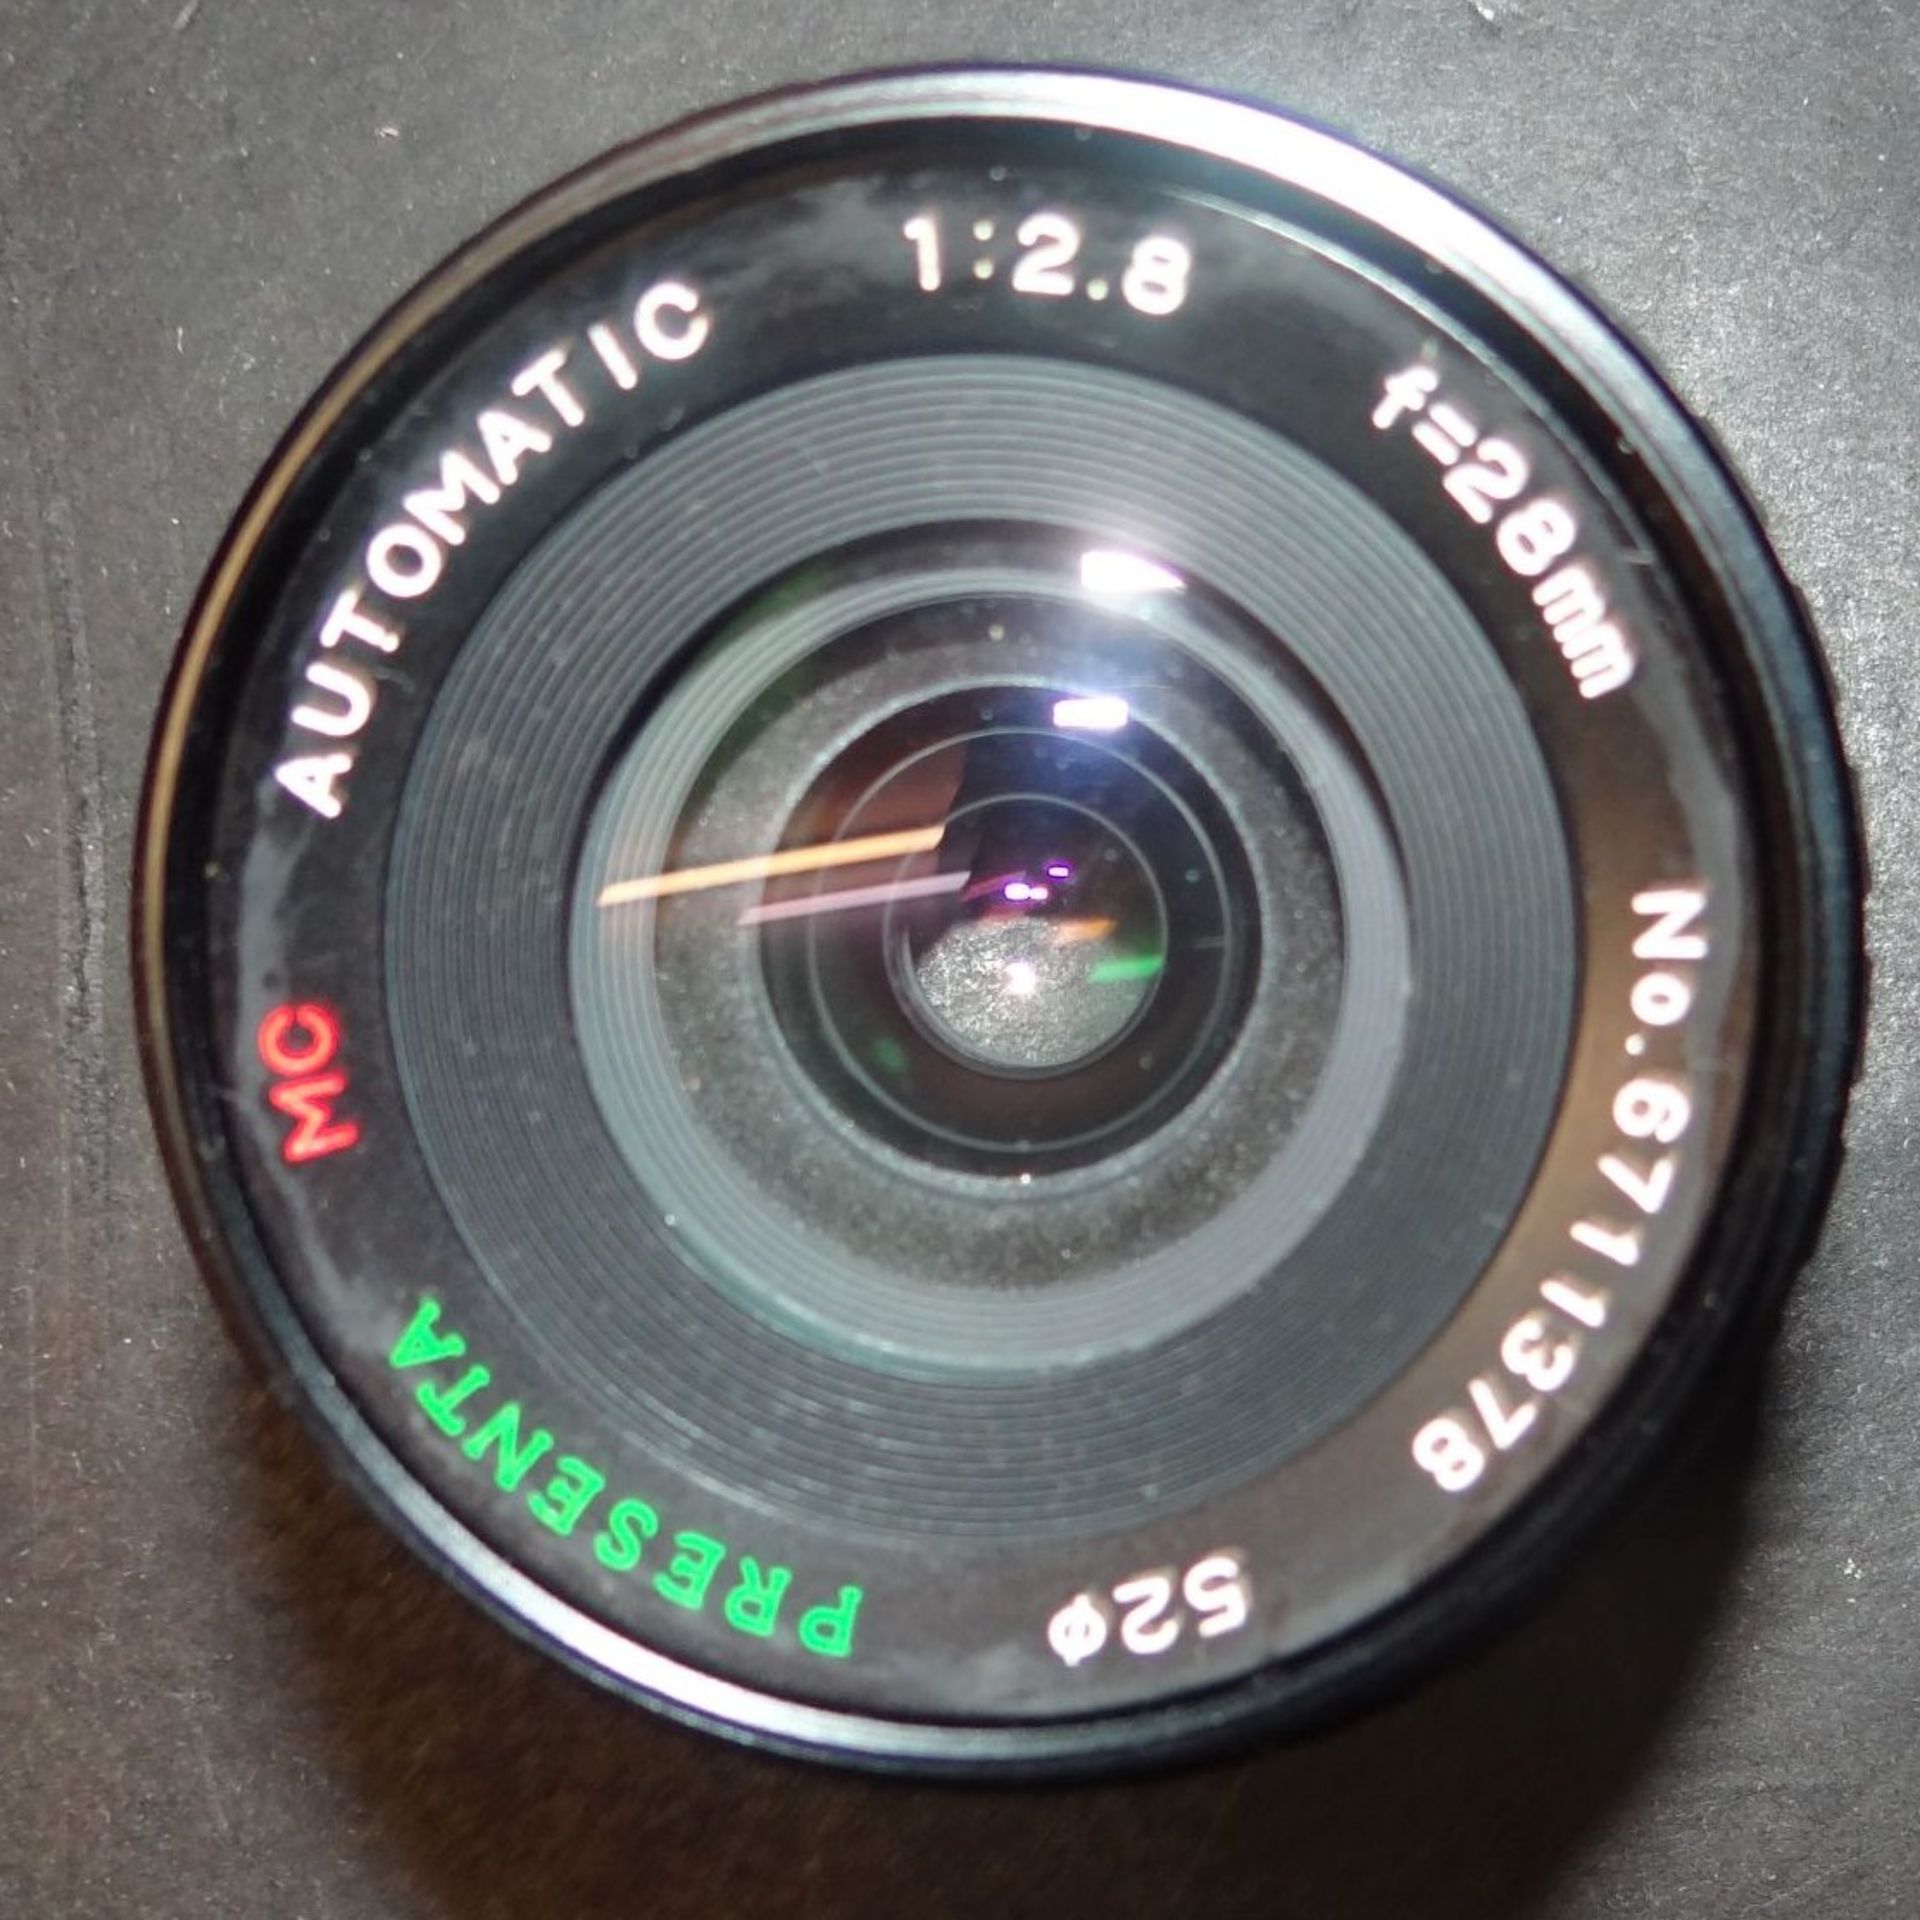 Spiegelreflex "Canon T70" mit Zubehör in Tasche, mit Beschreibung, Tele und anderes Objektiv, Blitz, - Bild 5 aus 5